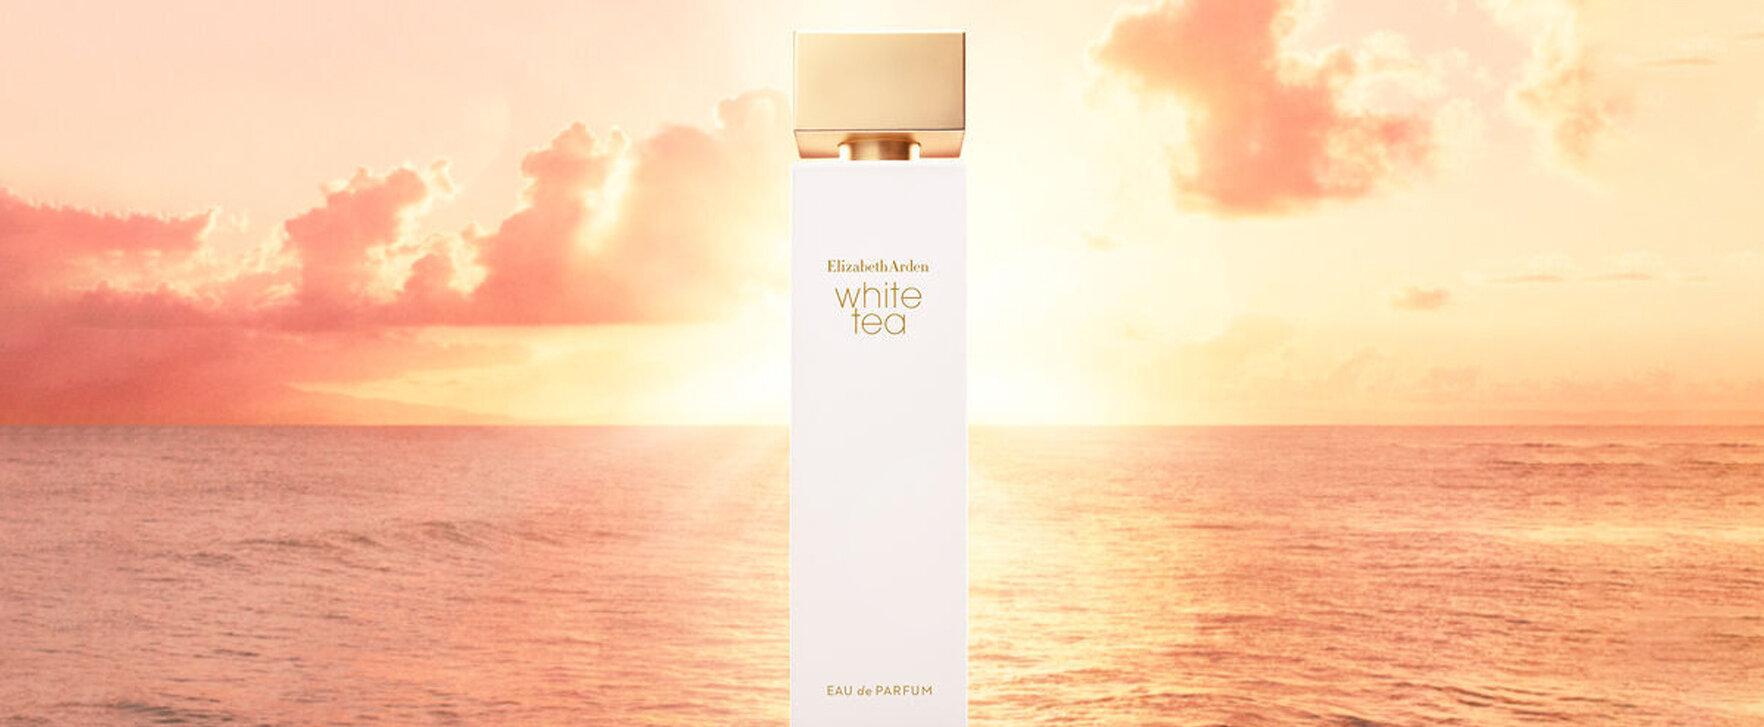 „White Tea (Eau de Parfum)“ - Elisabeth Arden präsentiert intensivere Version des Parfums